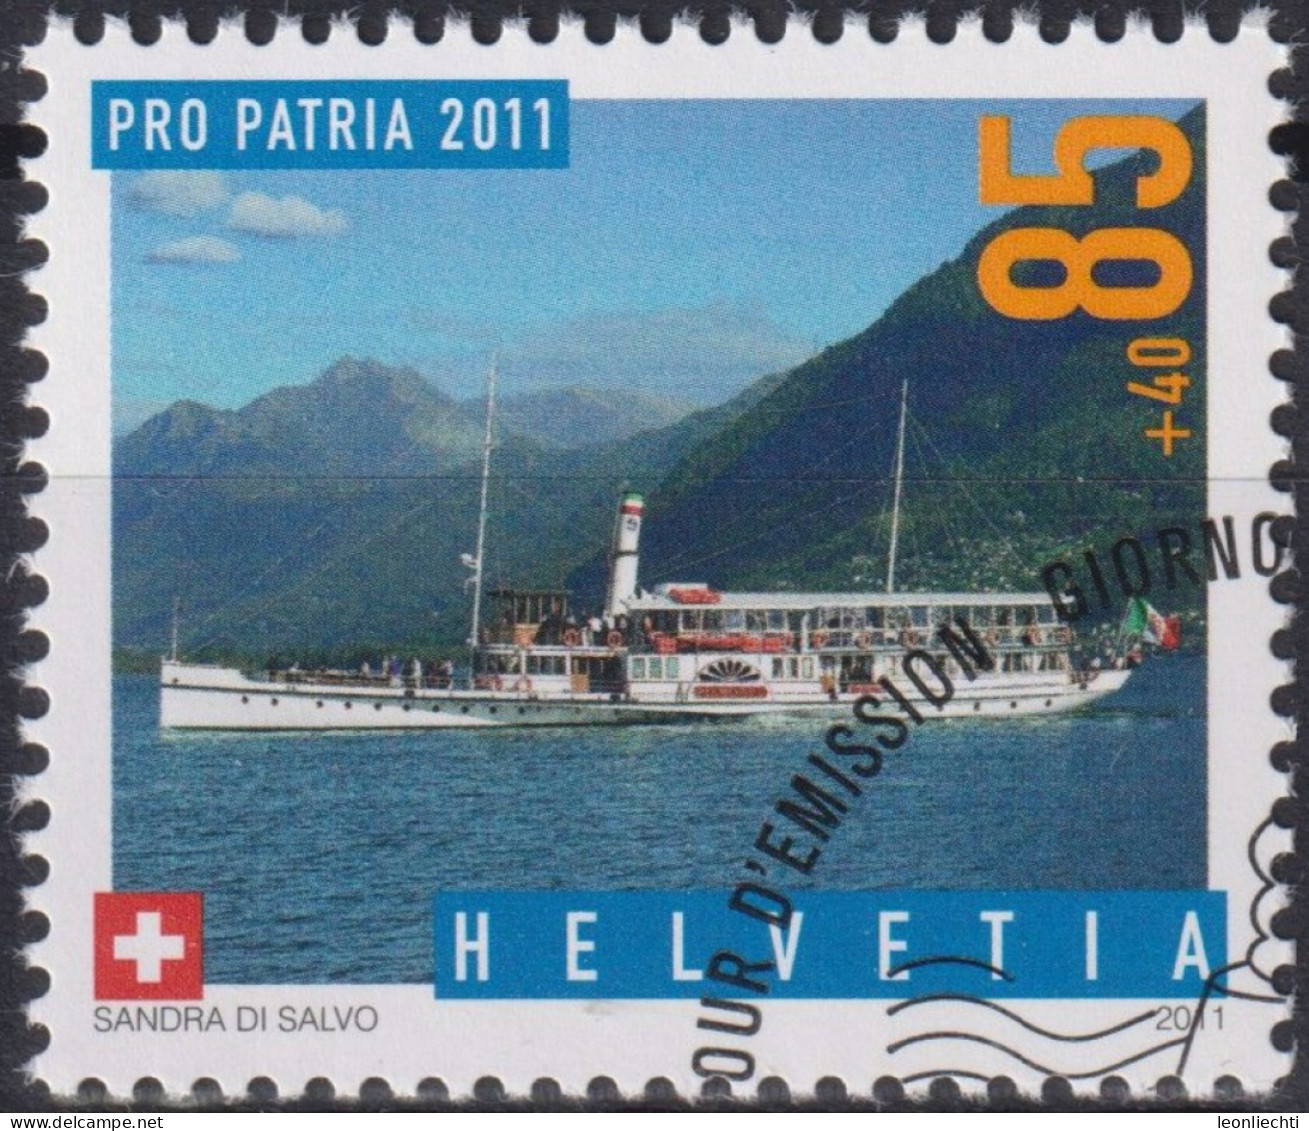 2011 Schweiz Pro Patria, Dampfschiff, Piemonte ⵙ Zum:CH B313, Mi:CH 2204, Yt:CH 2125 - Gebruikt